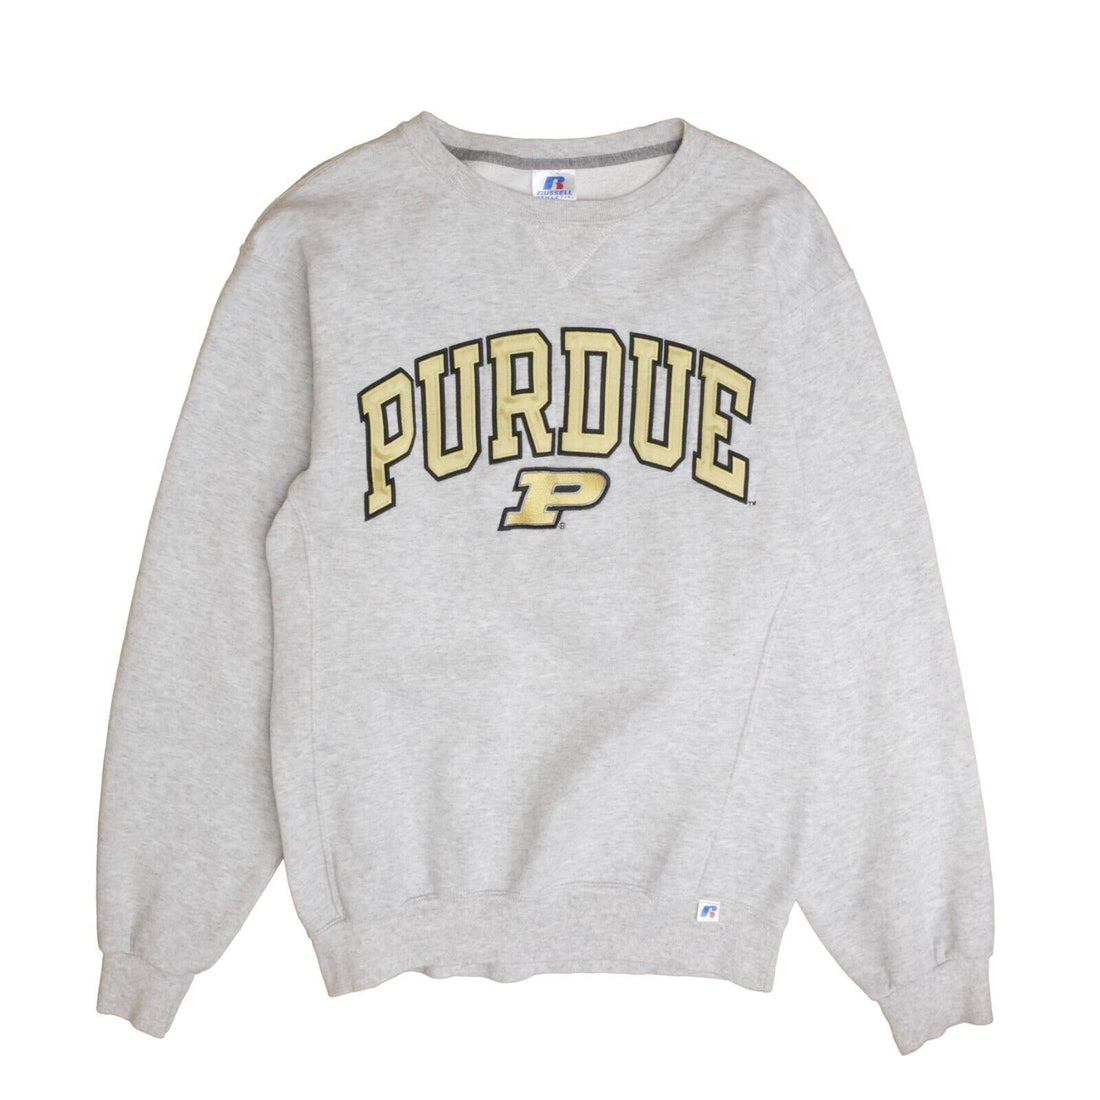 Vintage Purdue Boilermakers Russell Sweatshirt Crewneck Size Medium NCAA